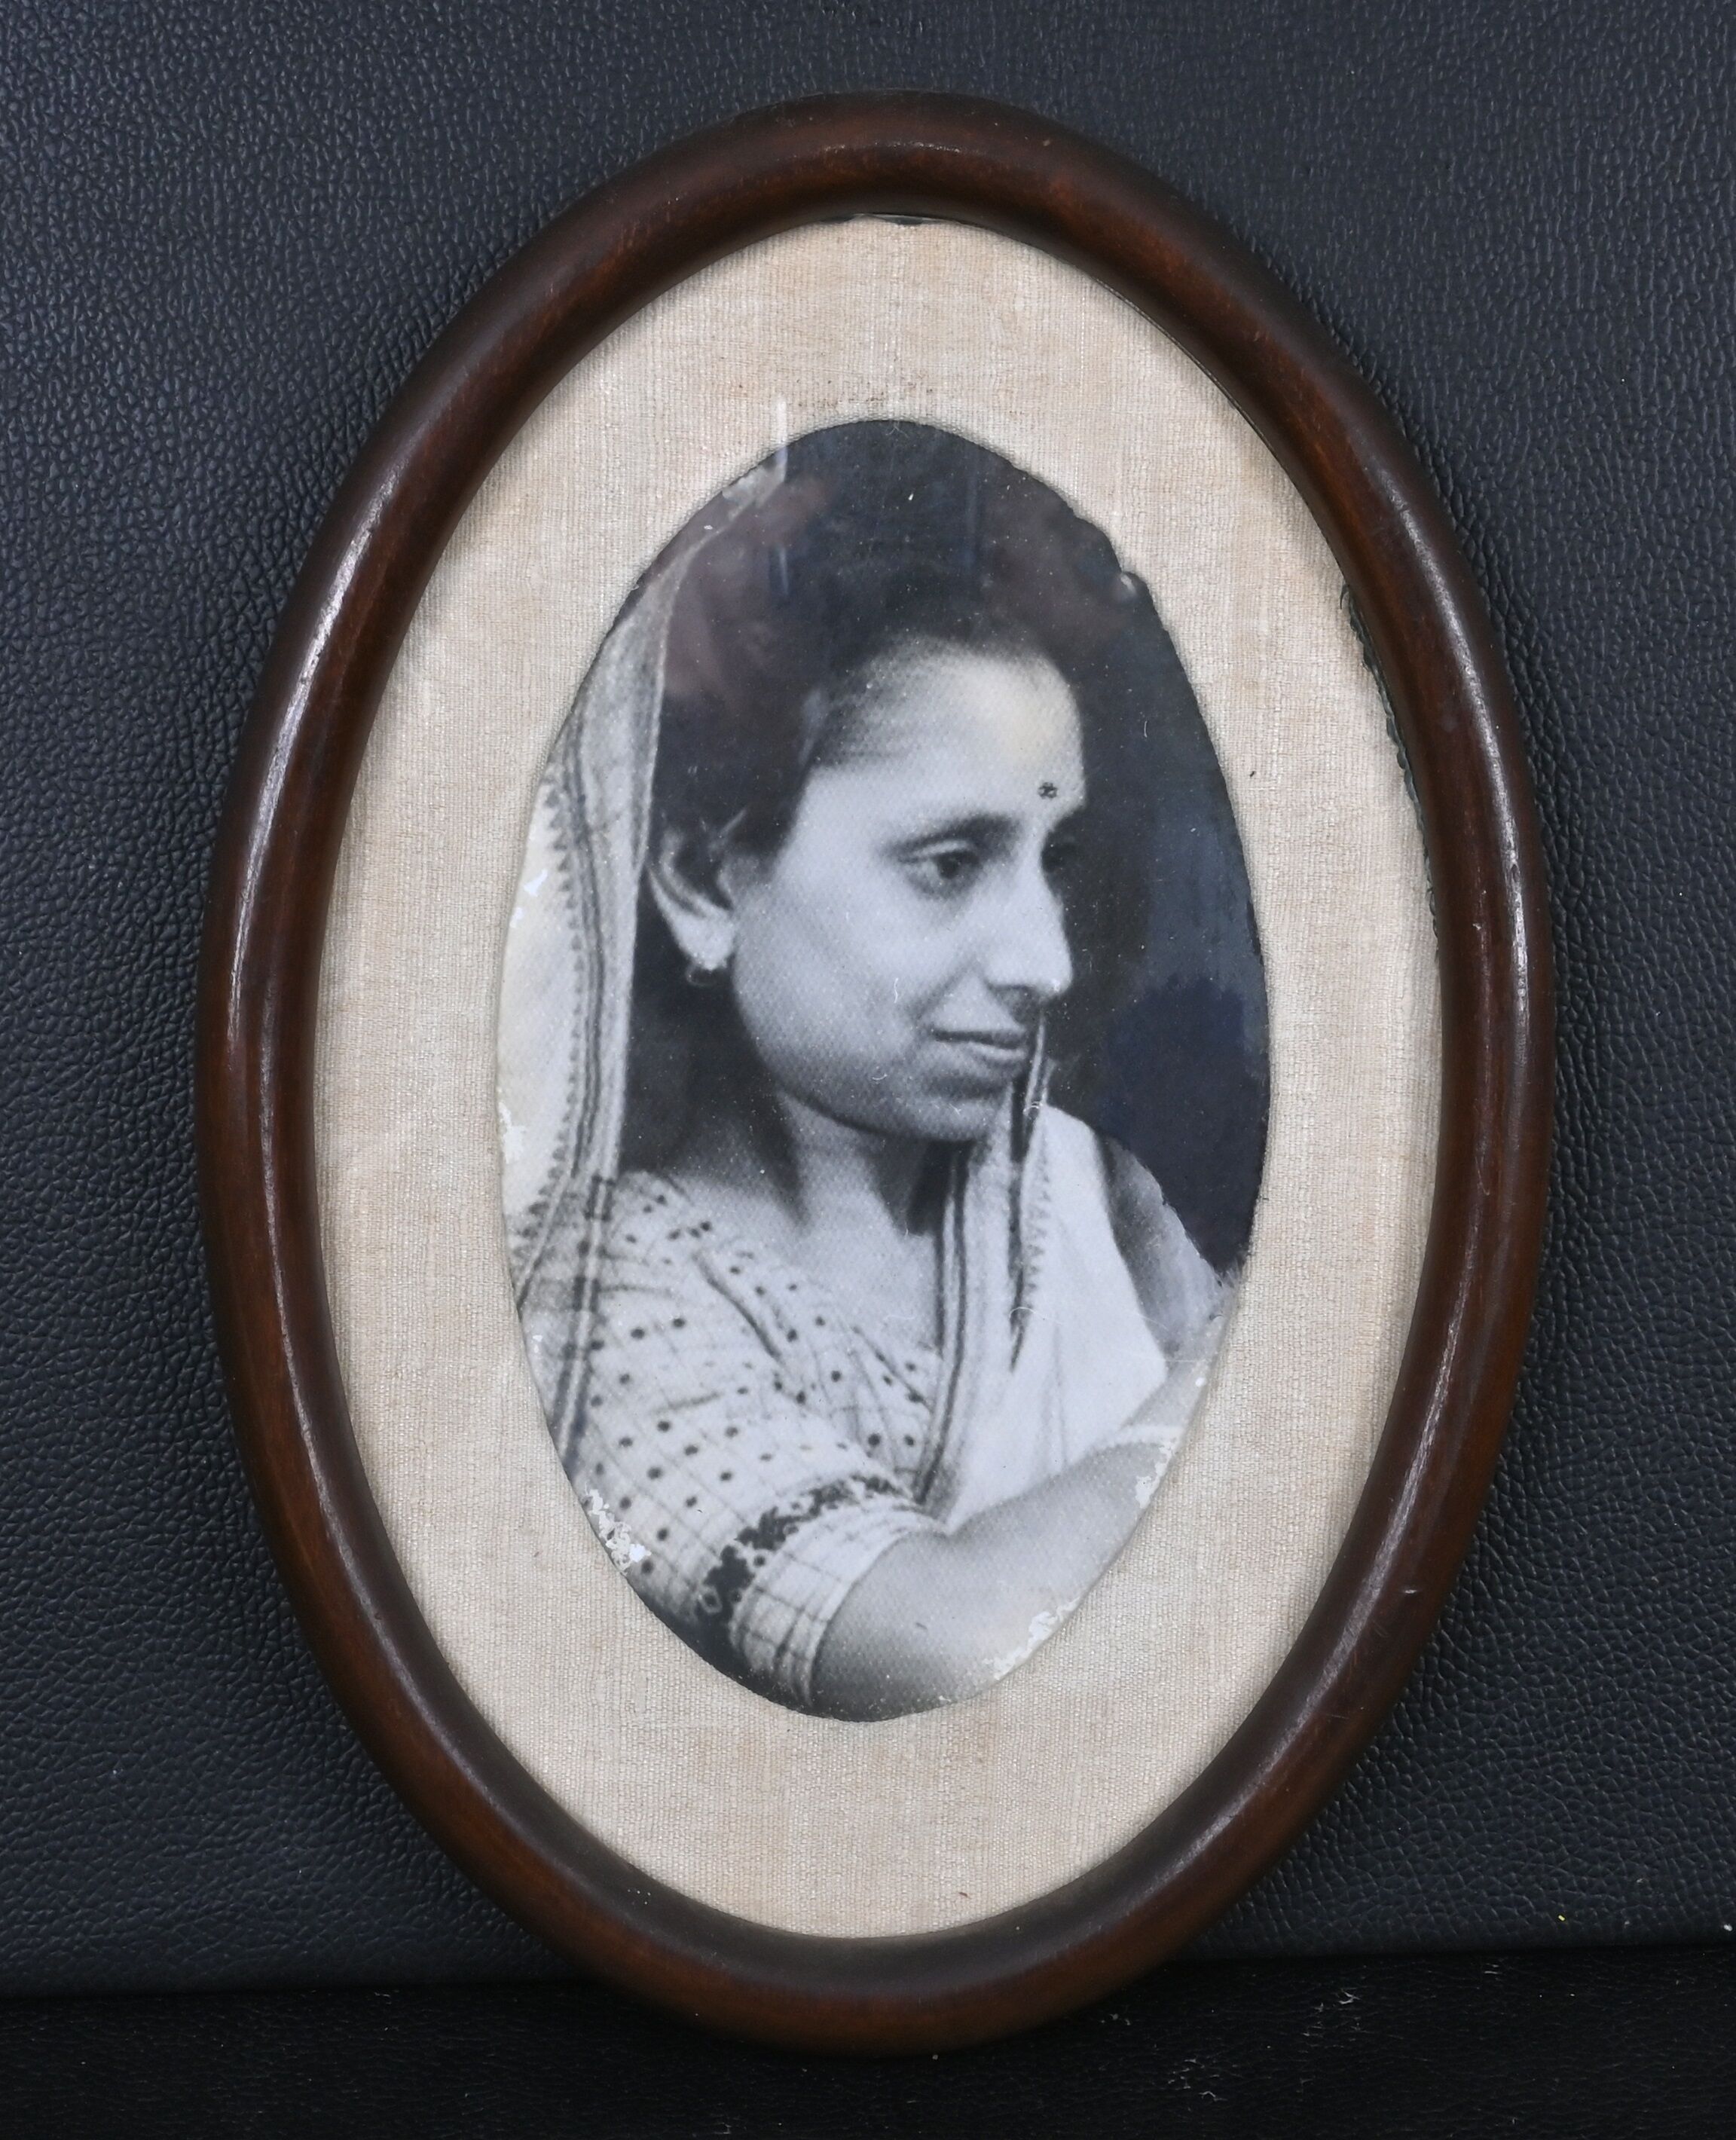 Karuna Kumar